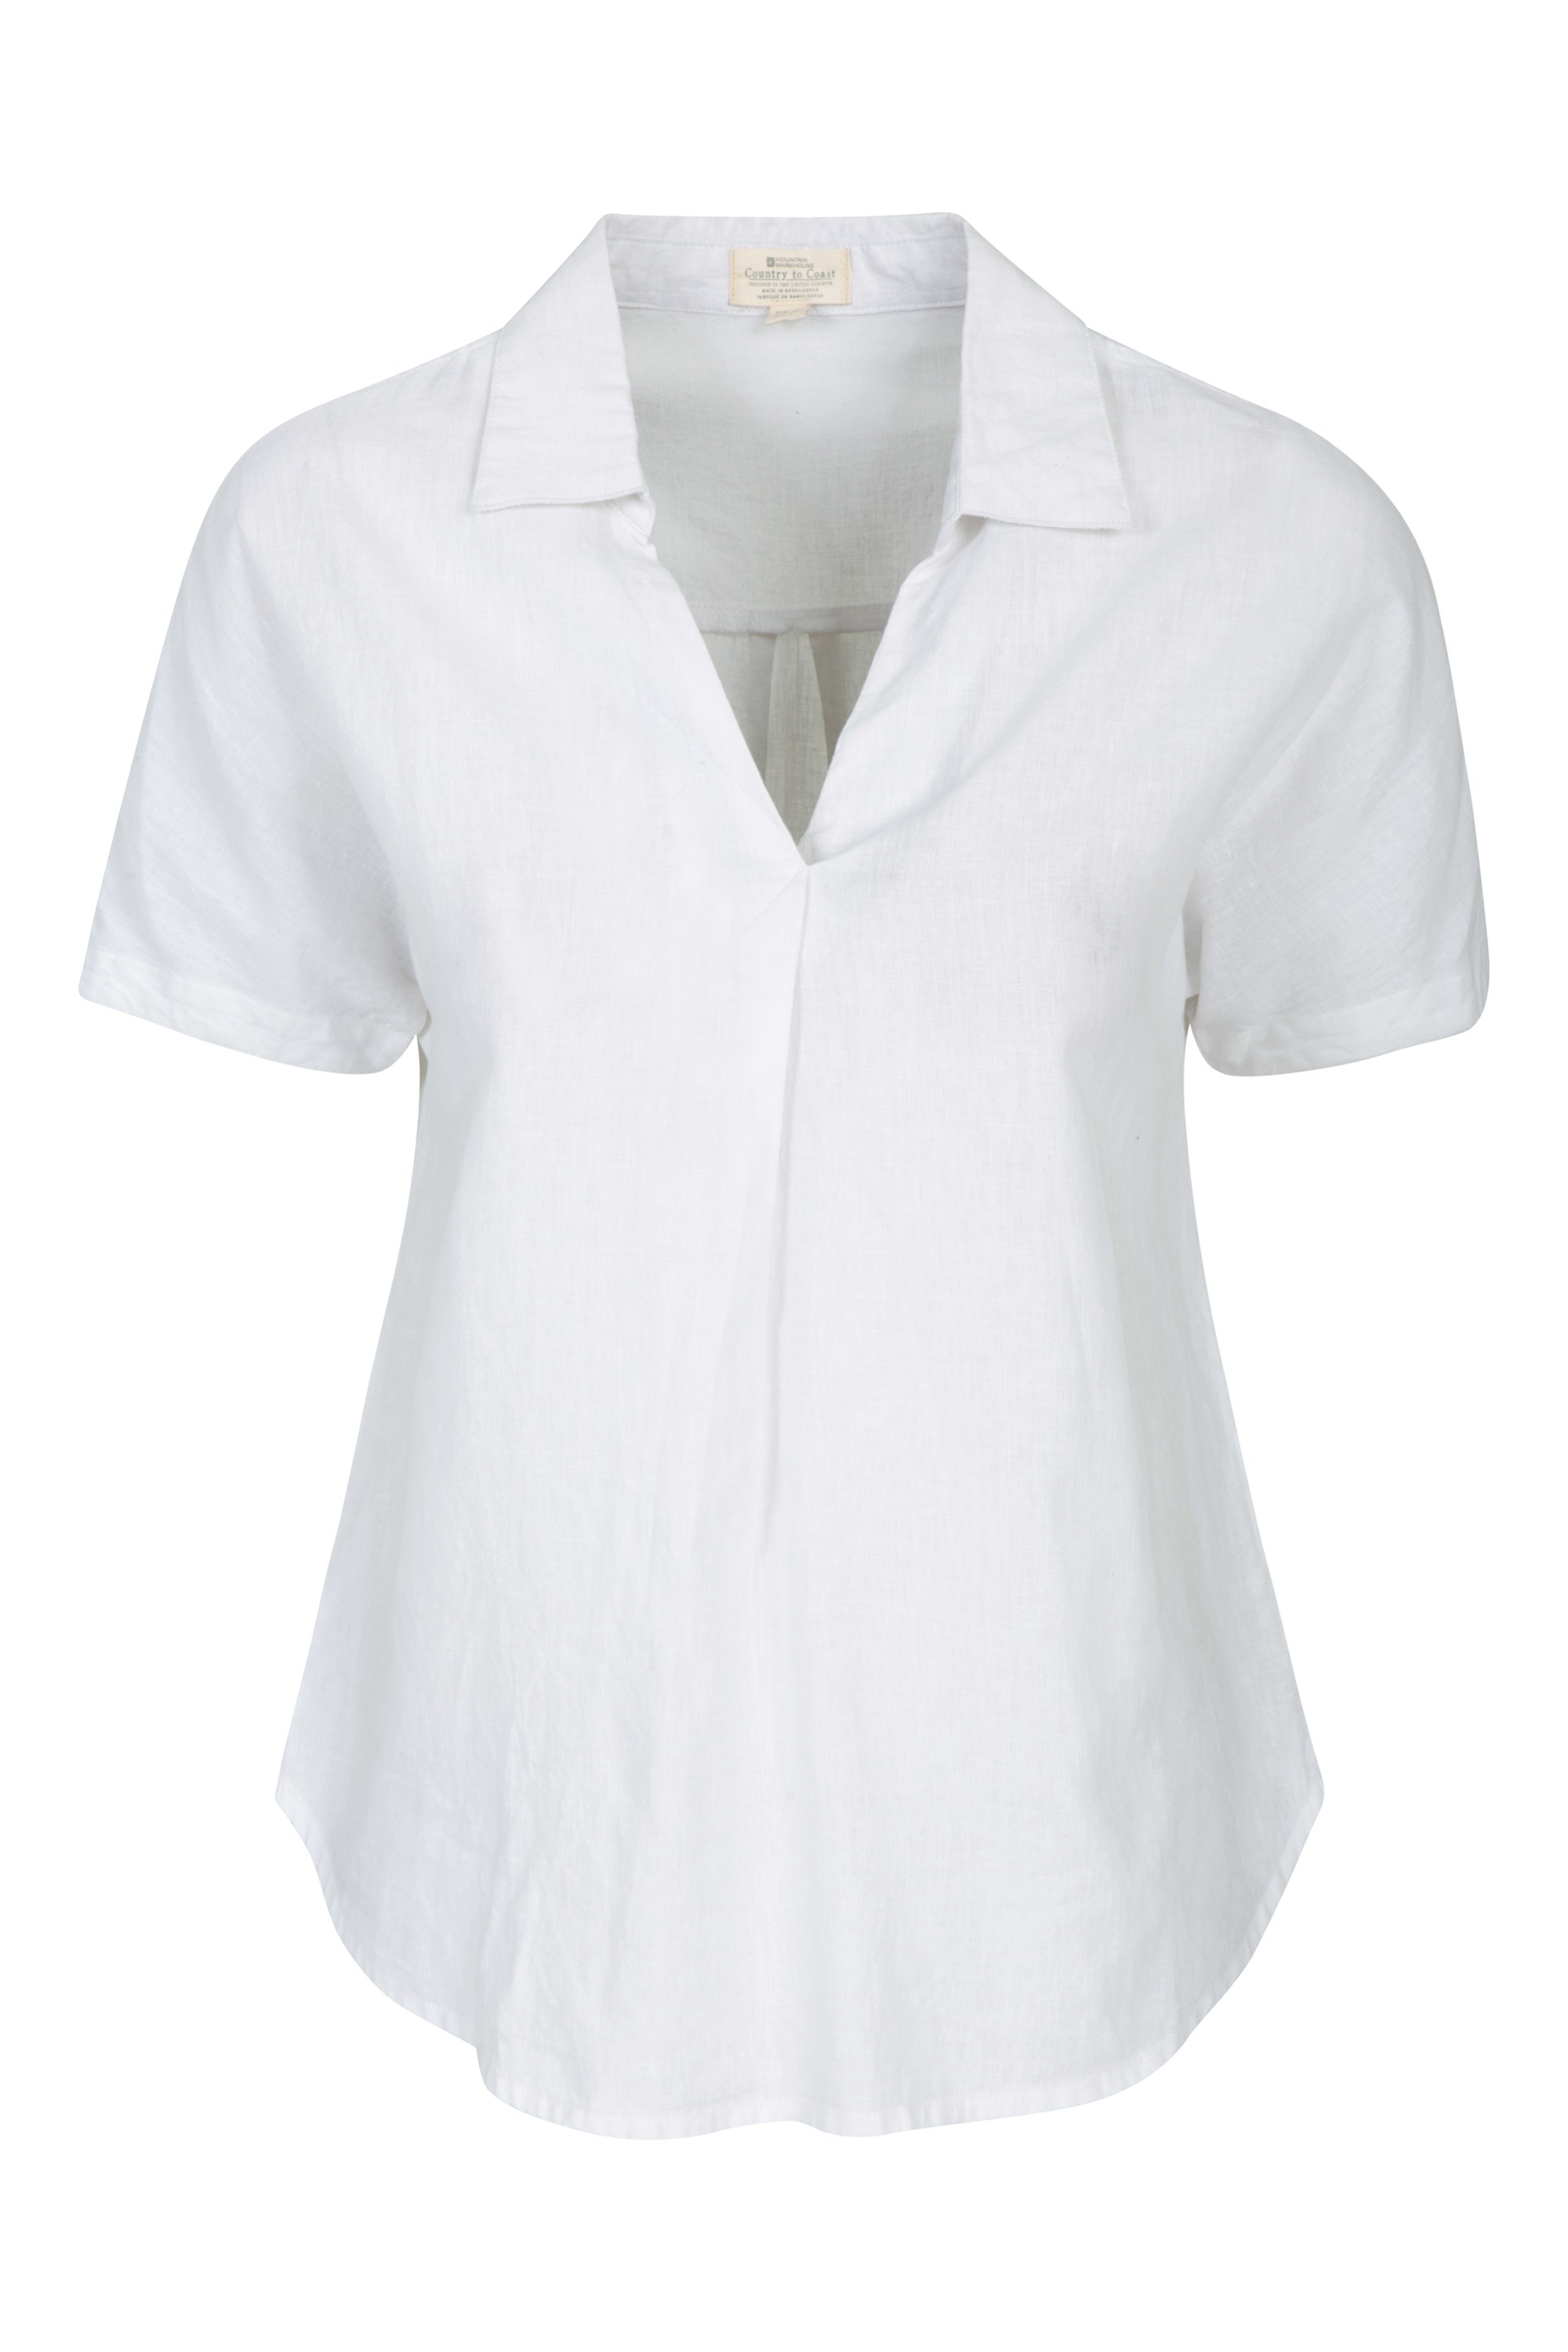 Breeze Linen Womens Short Sleeve Shirt - White